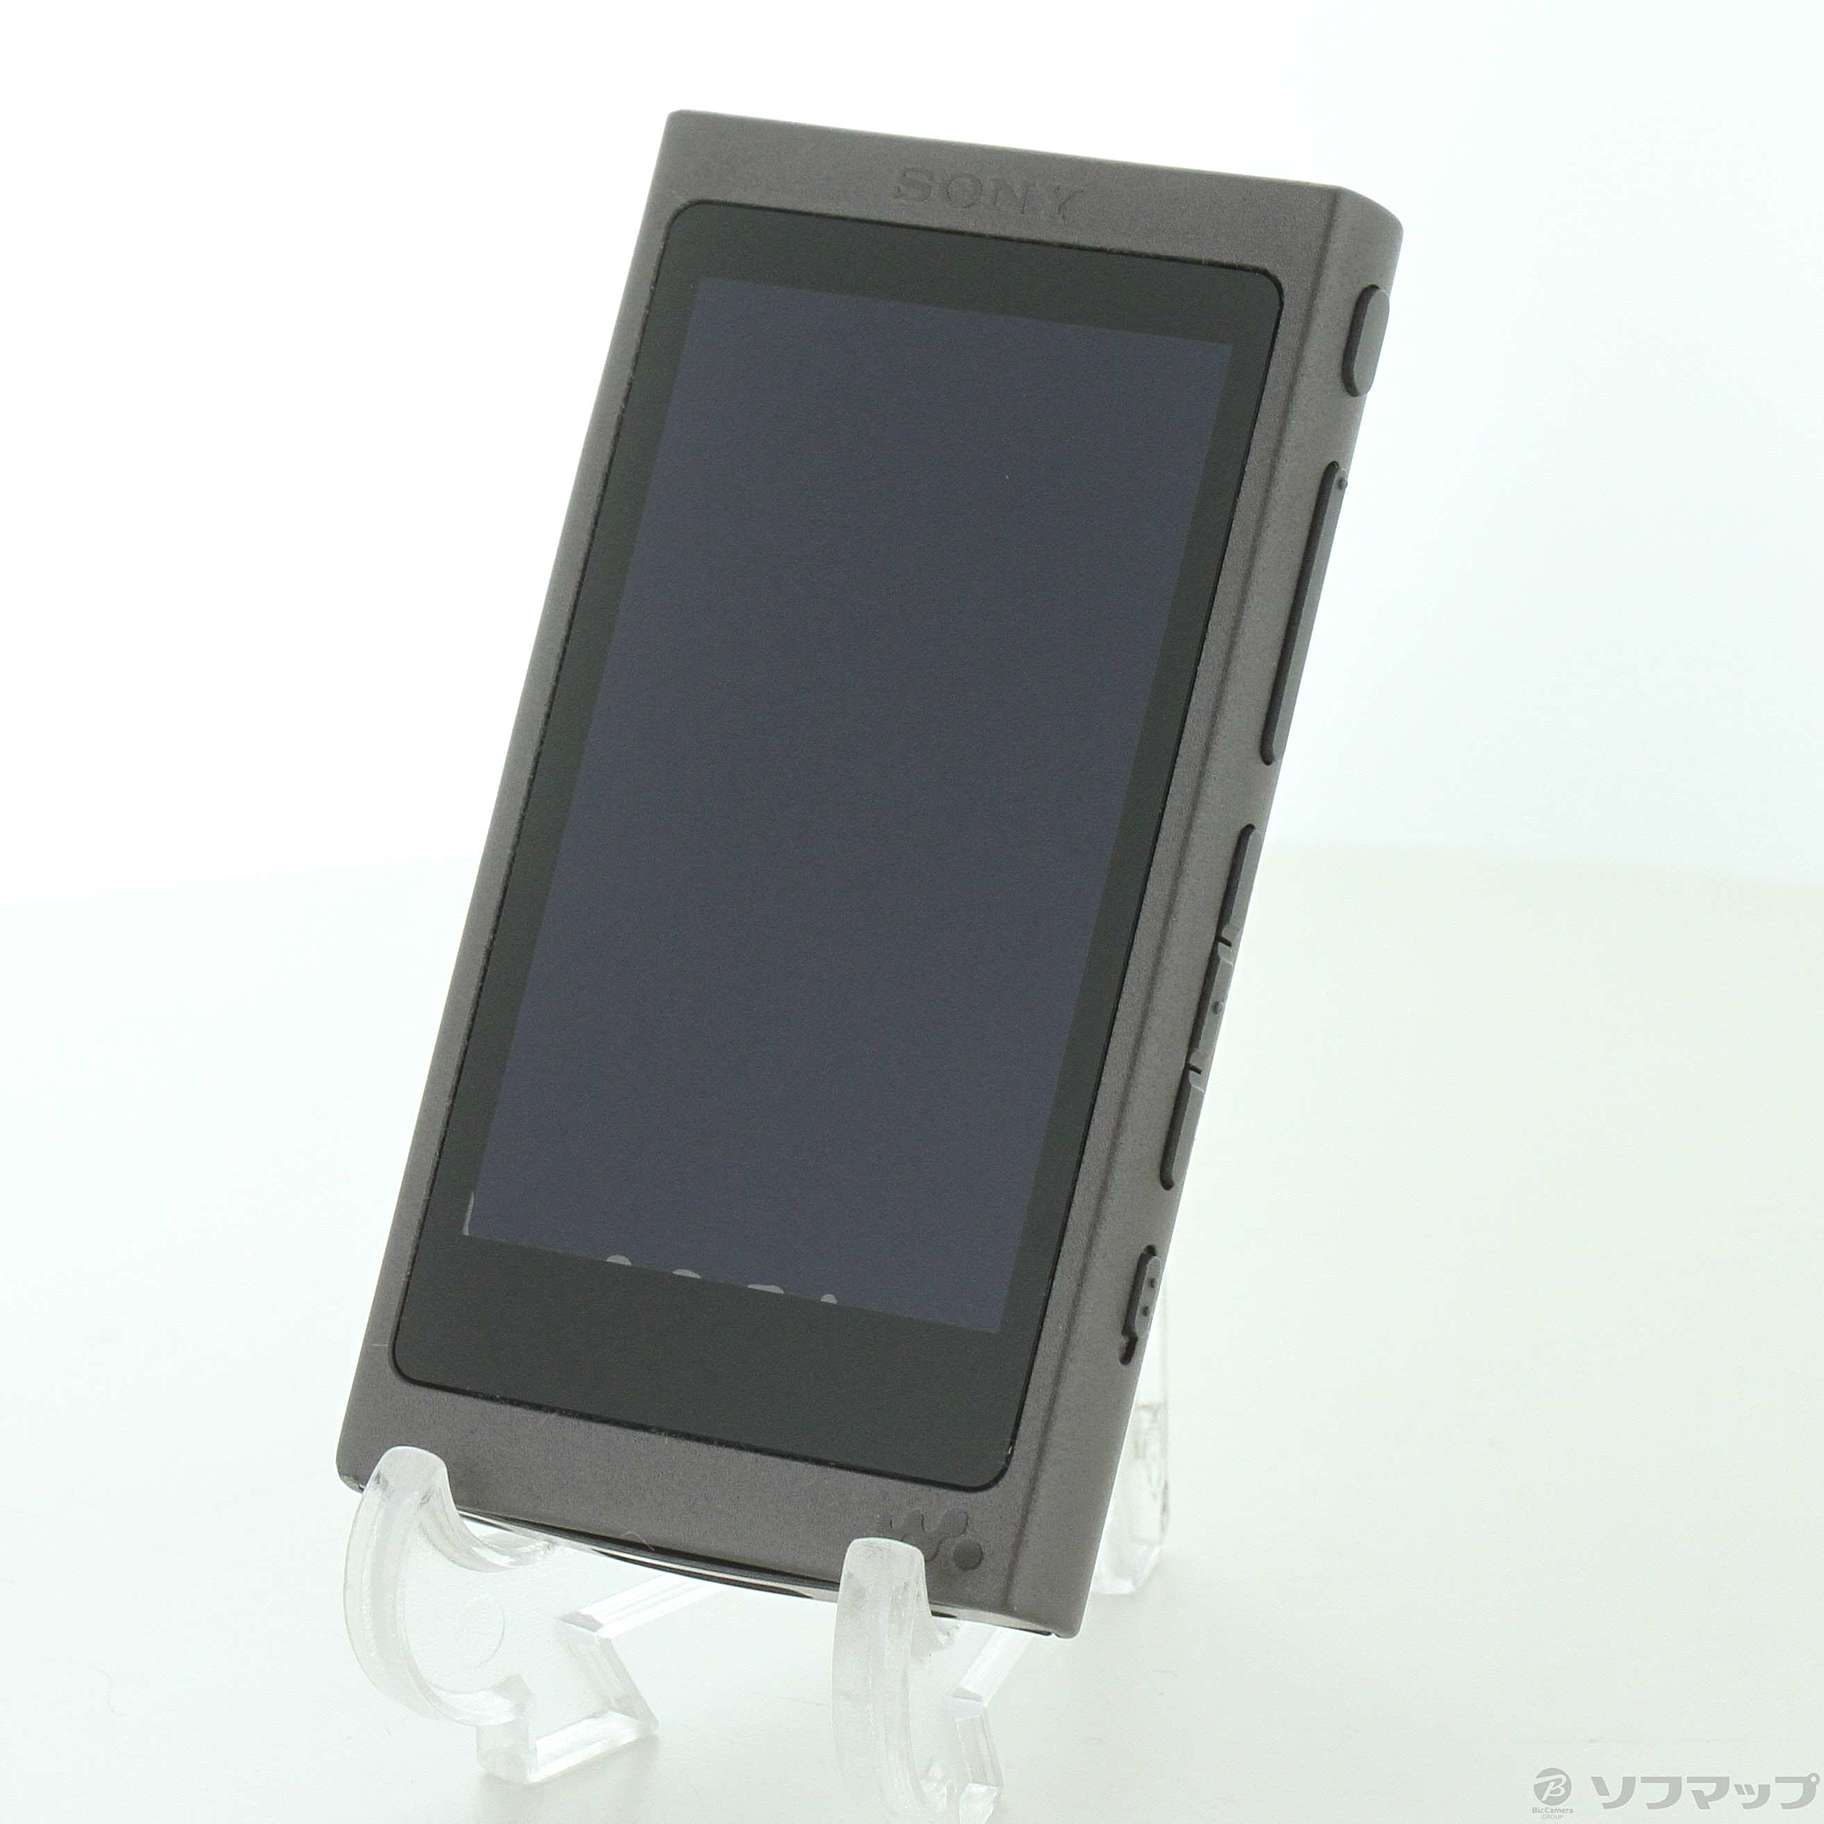 ソニー ウォークマン Aシリーズ 16GB NW-A45 グレイッシュブラック